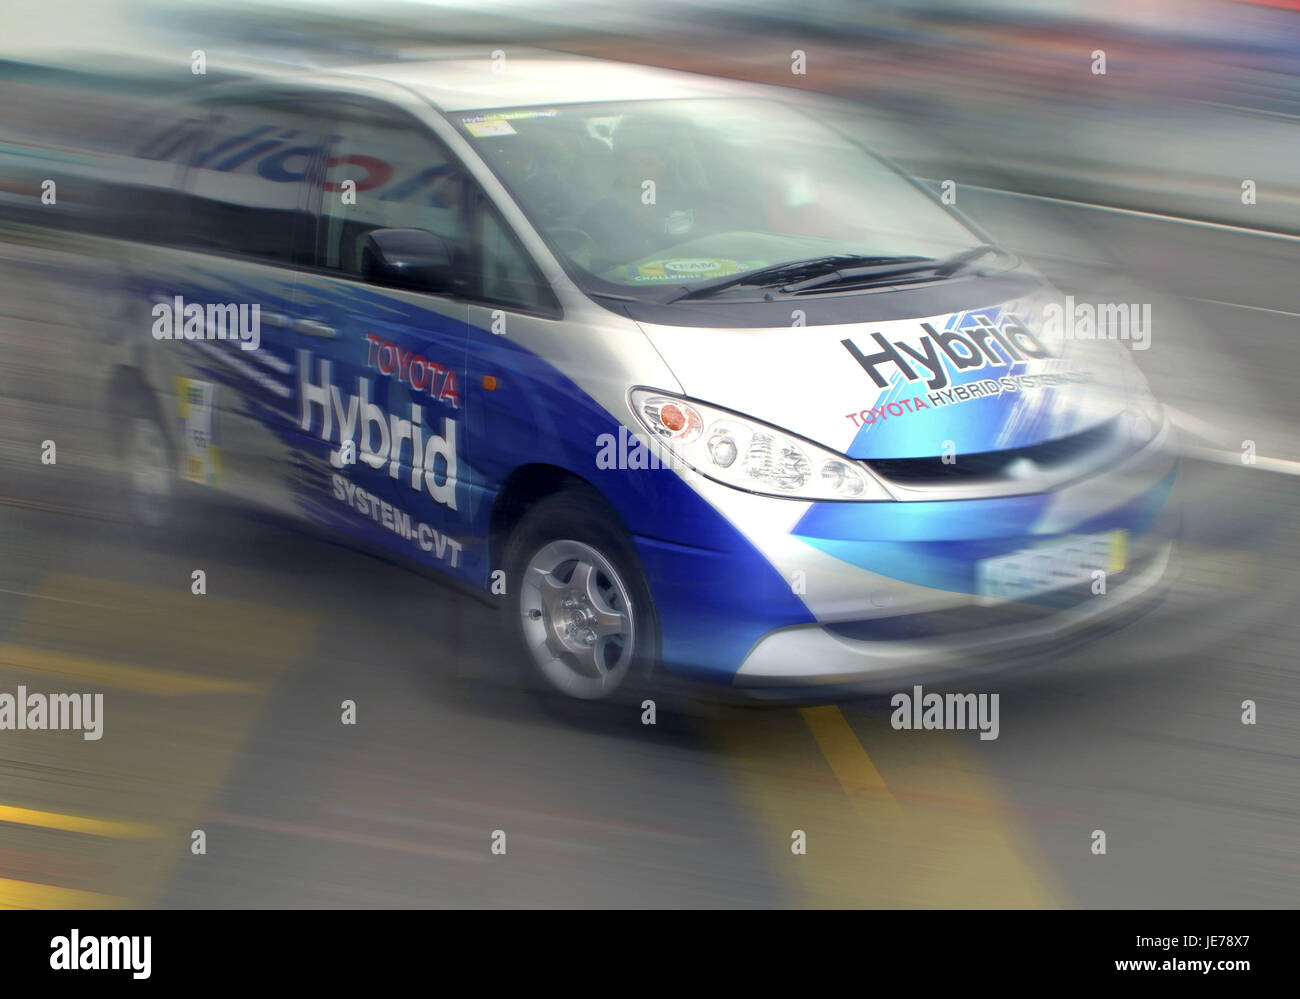 Toyota Hybrid vehicle, Stock Photo